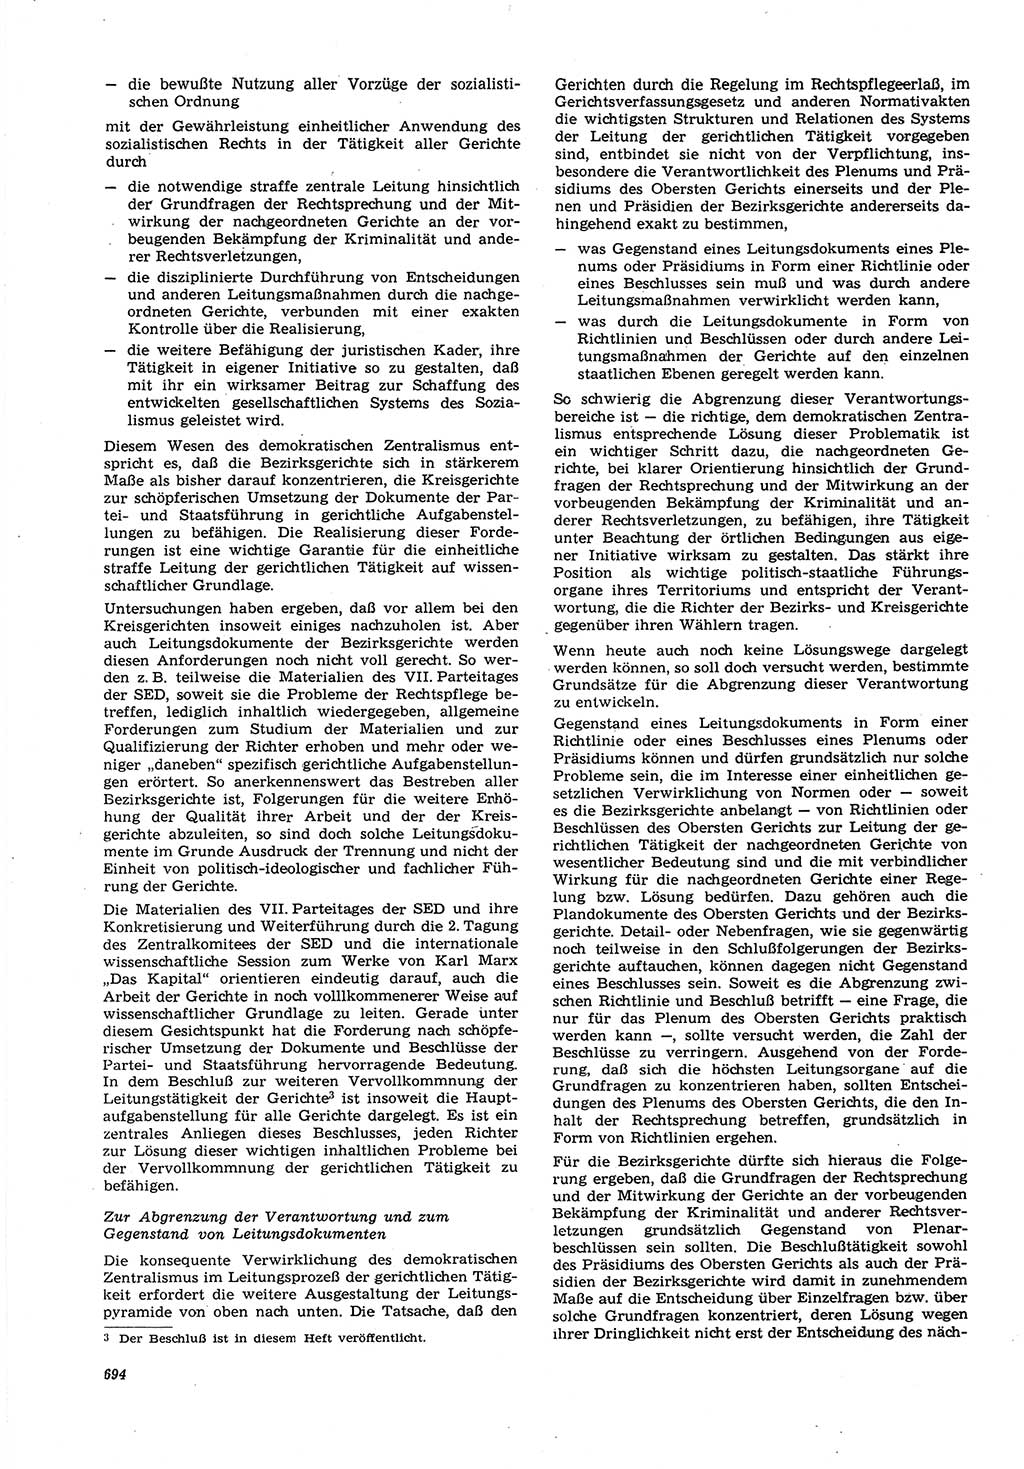 Neue Justiz (NJ), Zeitschrift für Recht und Rechtswissenschaft [Deutsche Demokratische Republik (DDR)], 21. Jahrgang 1967, Seite 694 (NJ DDR 1967, S. 694)